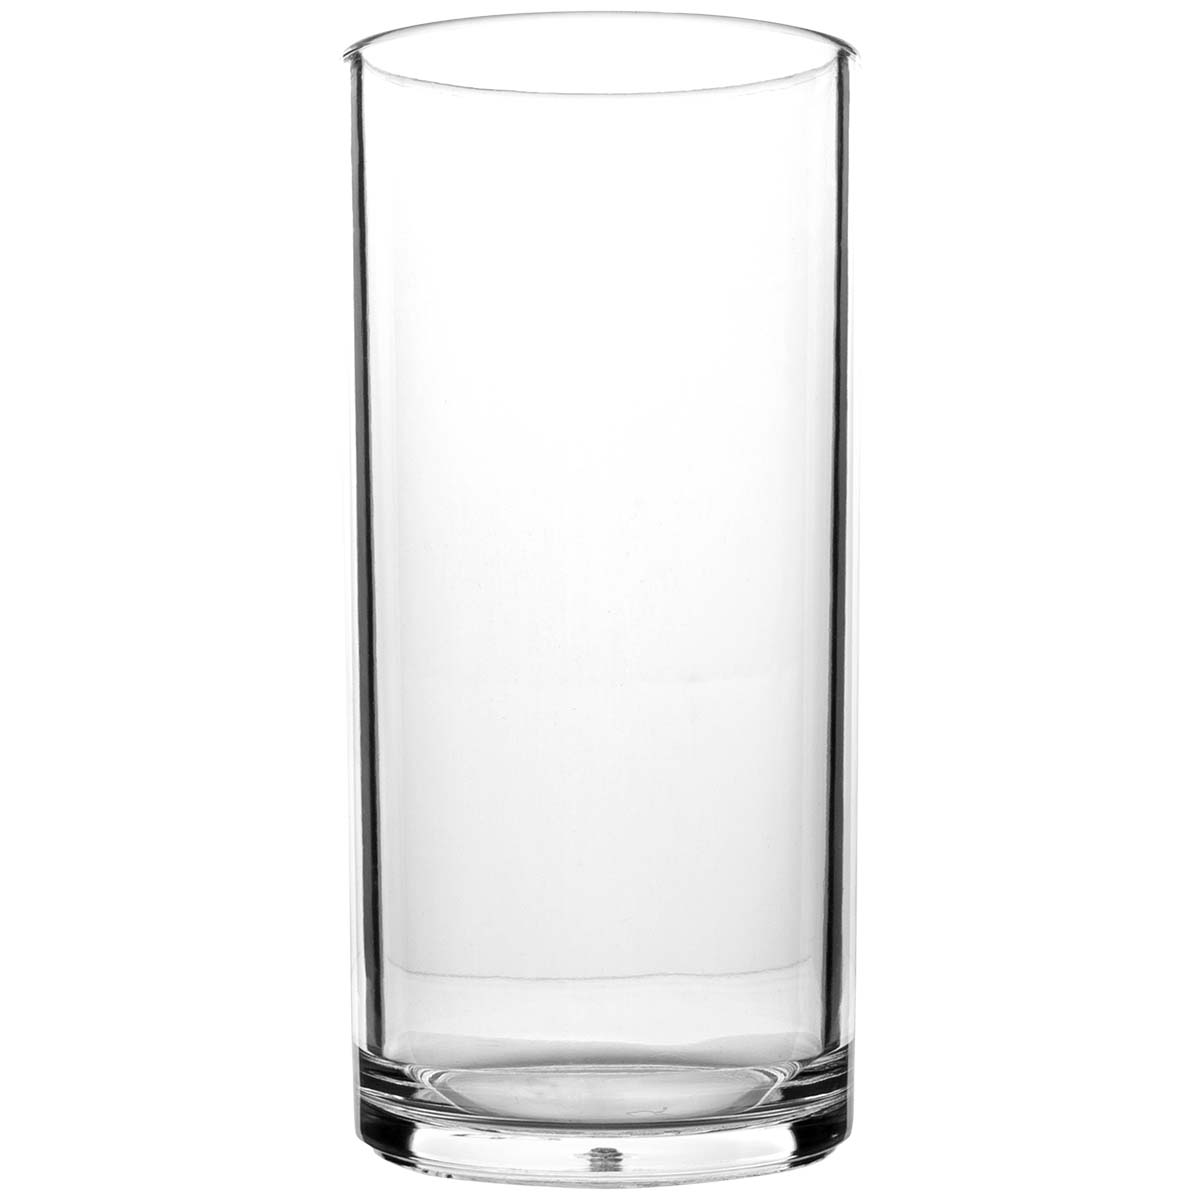 6101451 Een extra stevige en luxe set longdrink glazen. Gemaakt van 100% polycarbonaat. Hierdoor zijn deze glazen vrijwel onbreekbaar, lichtgewicht en kraswerend. Ook zijn deze glazen vaatwasmachinebestendig. Per 2 stuks verpakt.